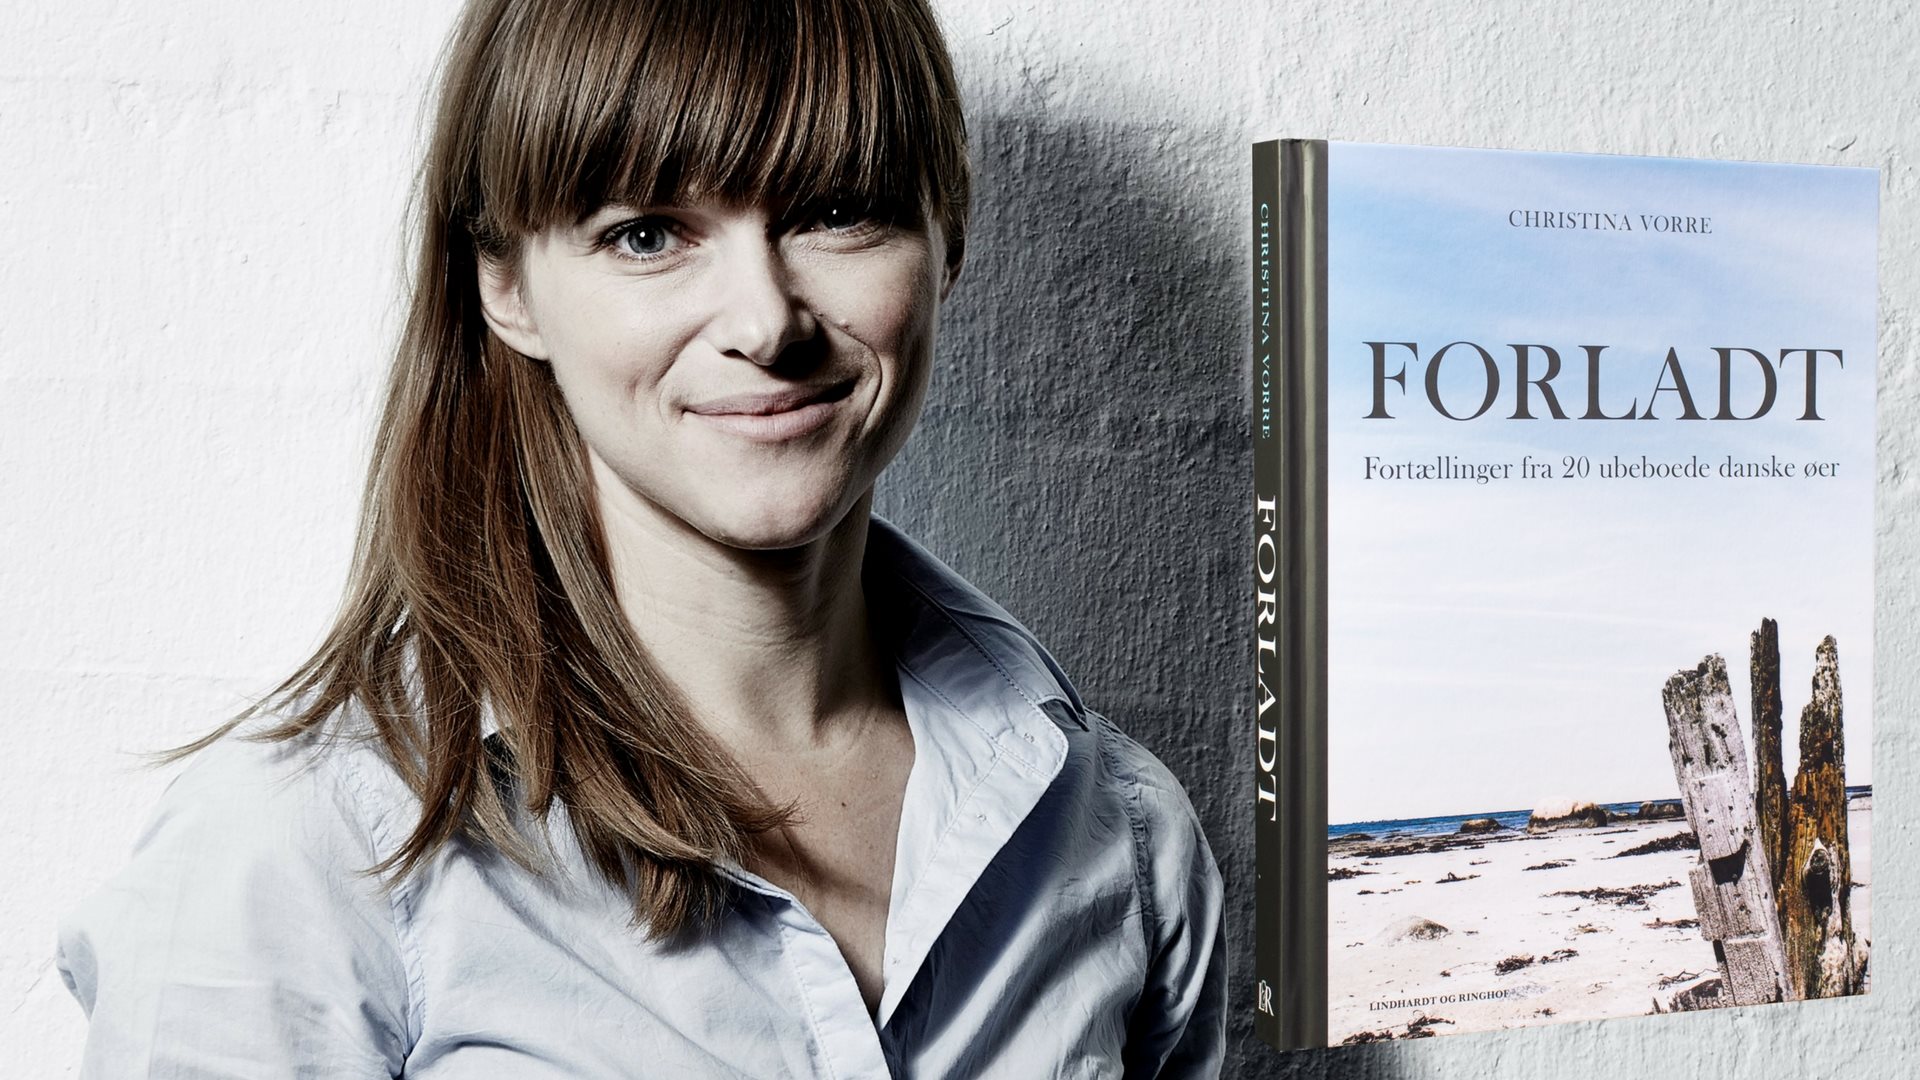 Interview: Christina Vorre er opdagelsesrejsende på forladte danske øer